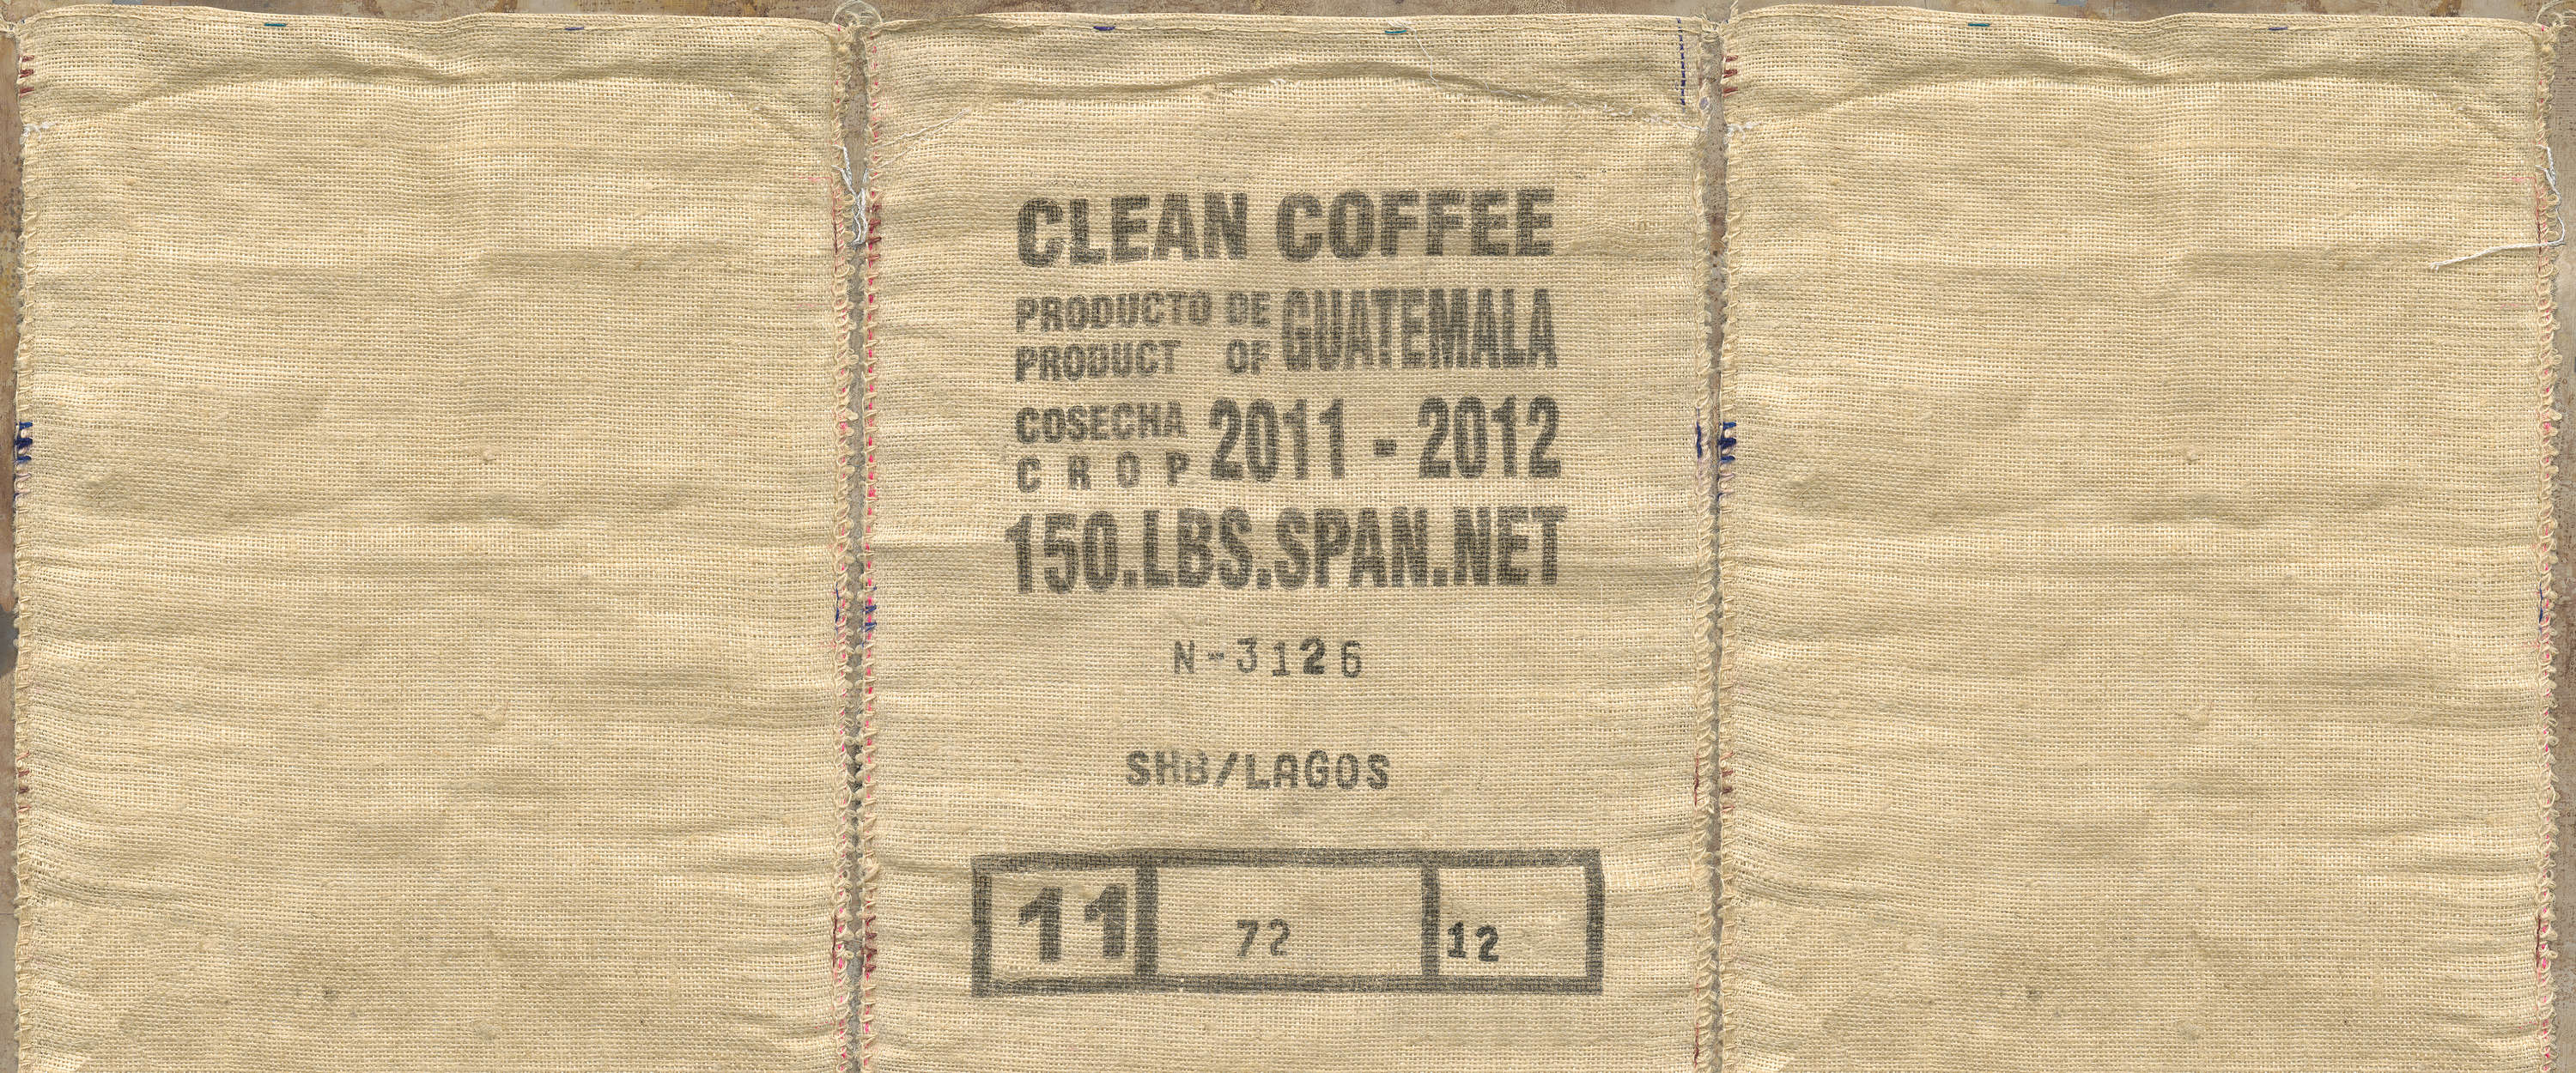             Muurschildering met gedetailleerde weergave van een koffietas
        